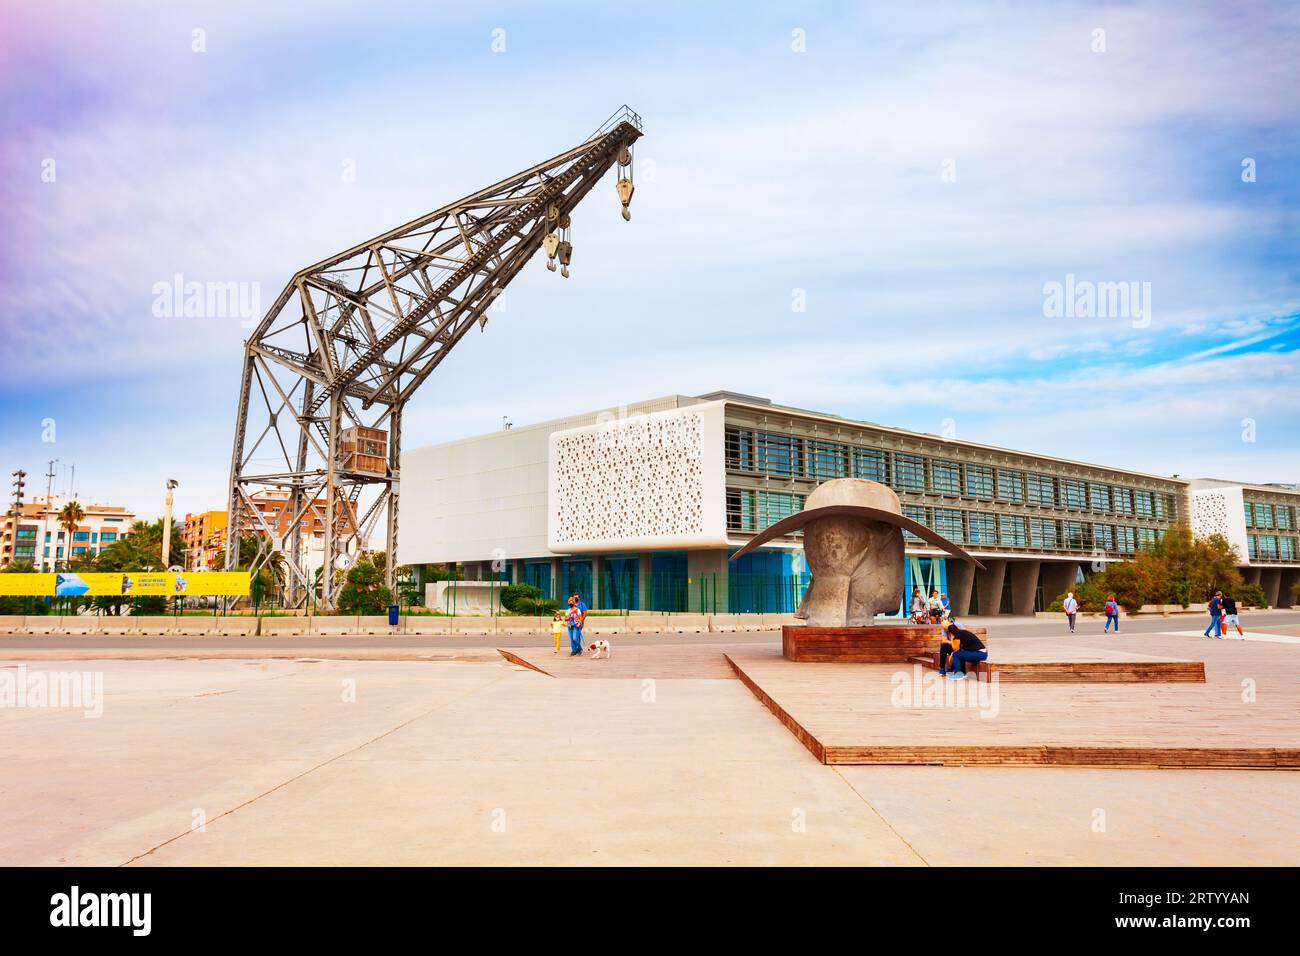 Valence, Espagne - 16 octobre 2021: La Pamela Sculpture, Crane and EDEM ou Escuela de Empresarios, une école d'affaires située dans le port de Valence Banque D'Images